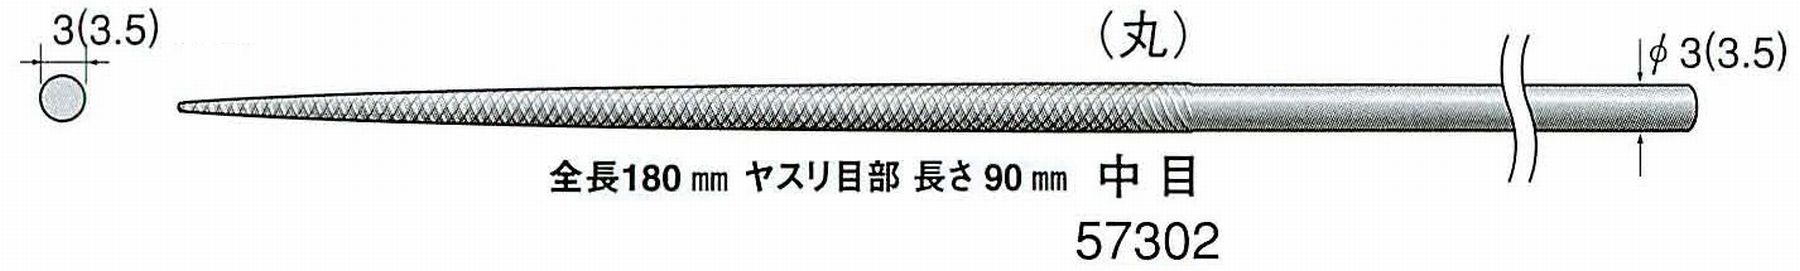 ナカニシ/NAKANISHI 精密仕上げヤスリ 丸 中目 軸径(シャンク)φ3.0mm(3.5) 57302